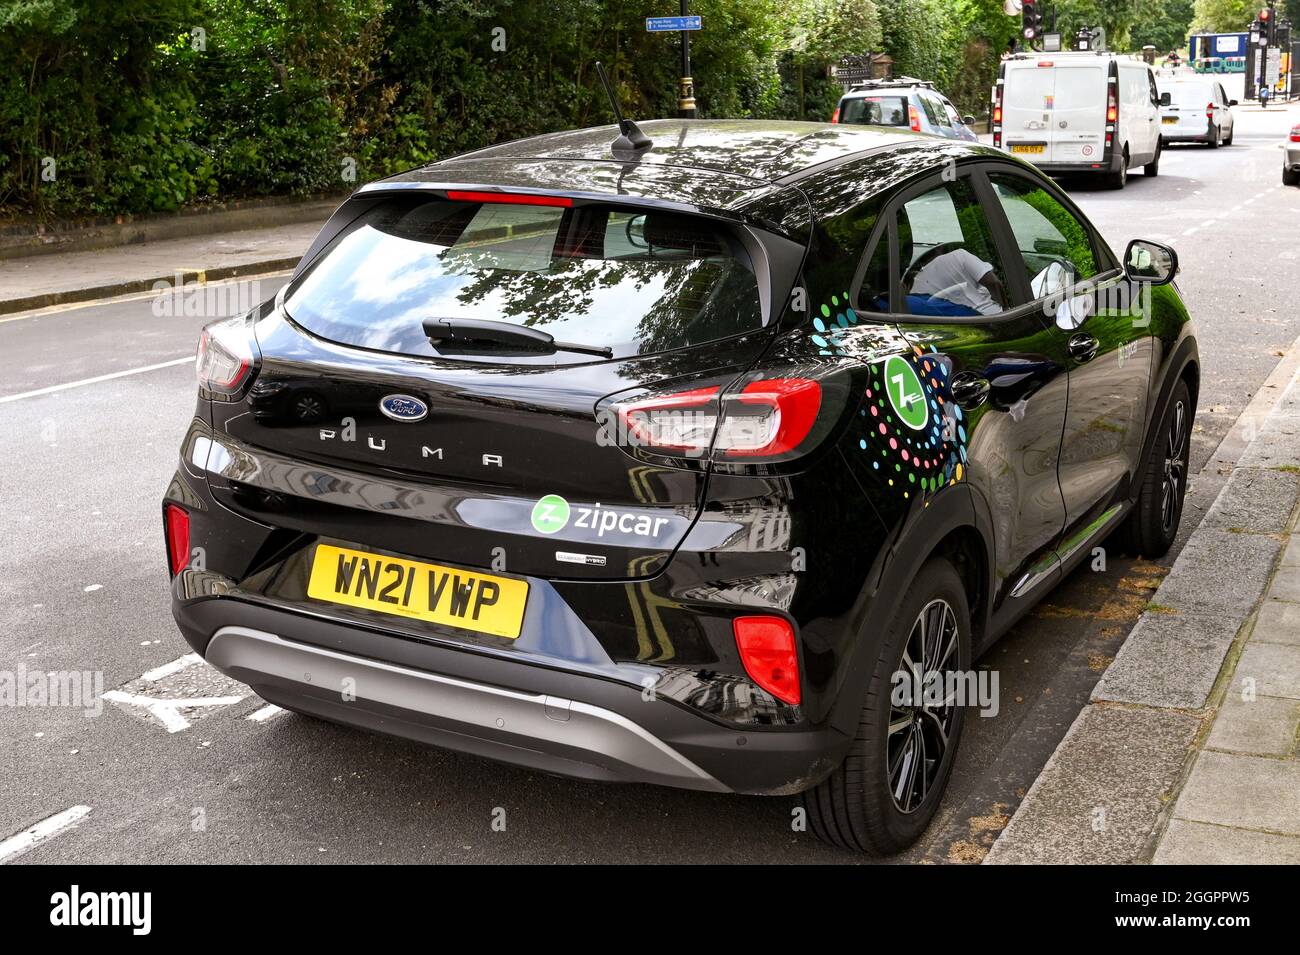 Londra, Inghilterra - Agosto 2021: Zipcar parcheggiata su una strada nel centro di Londra. Le auto, che fanno parte di un programma di condivisione auto, vengono ritirate e riprodotte Foto Stock